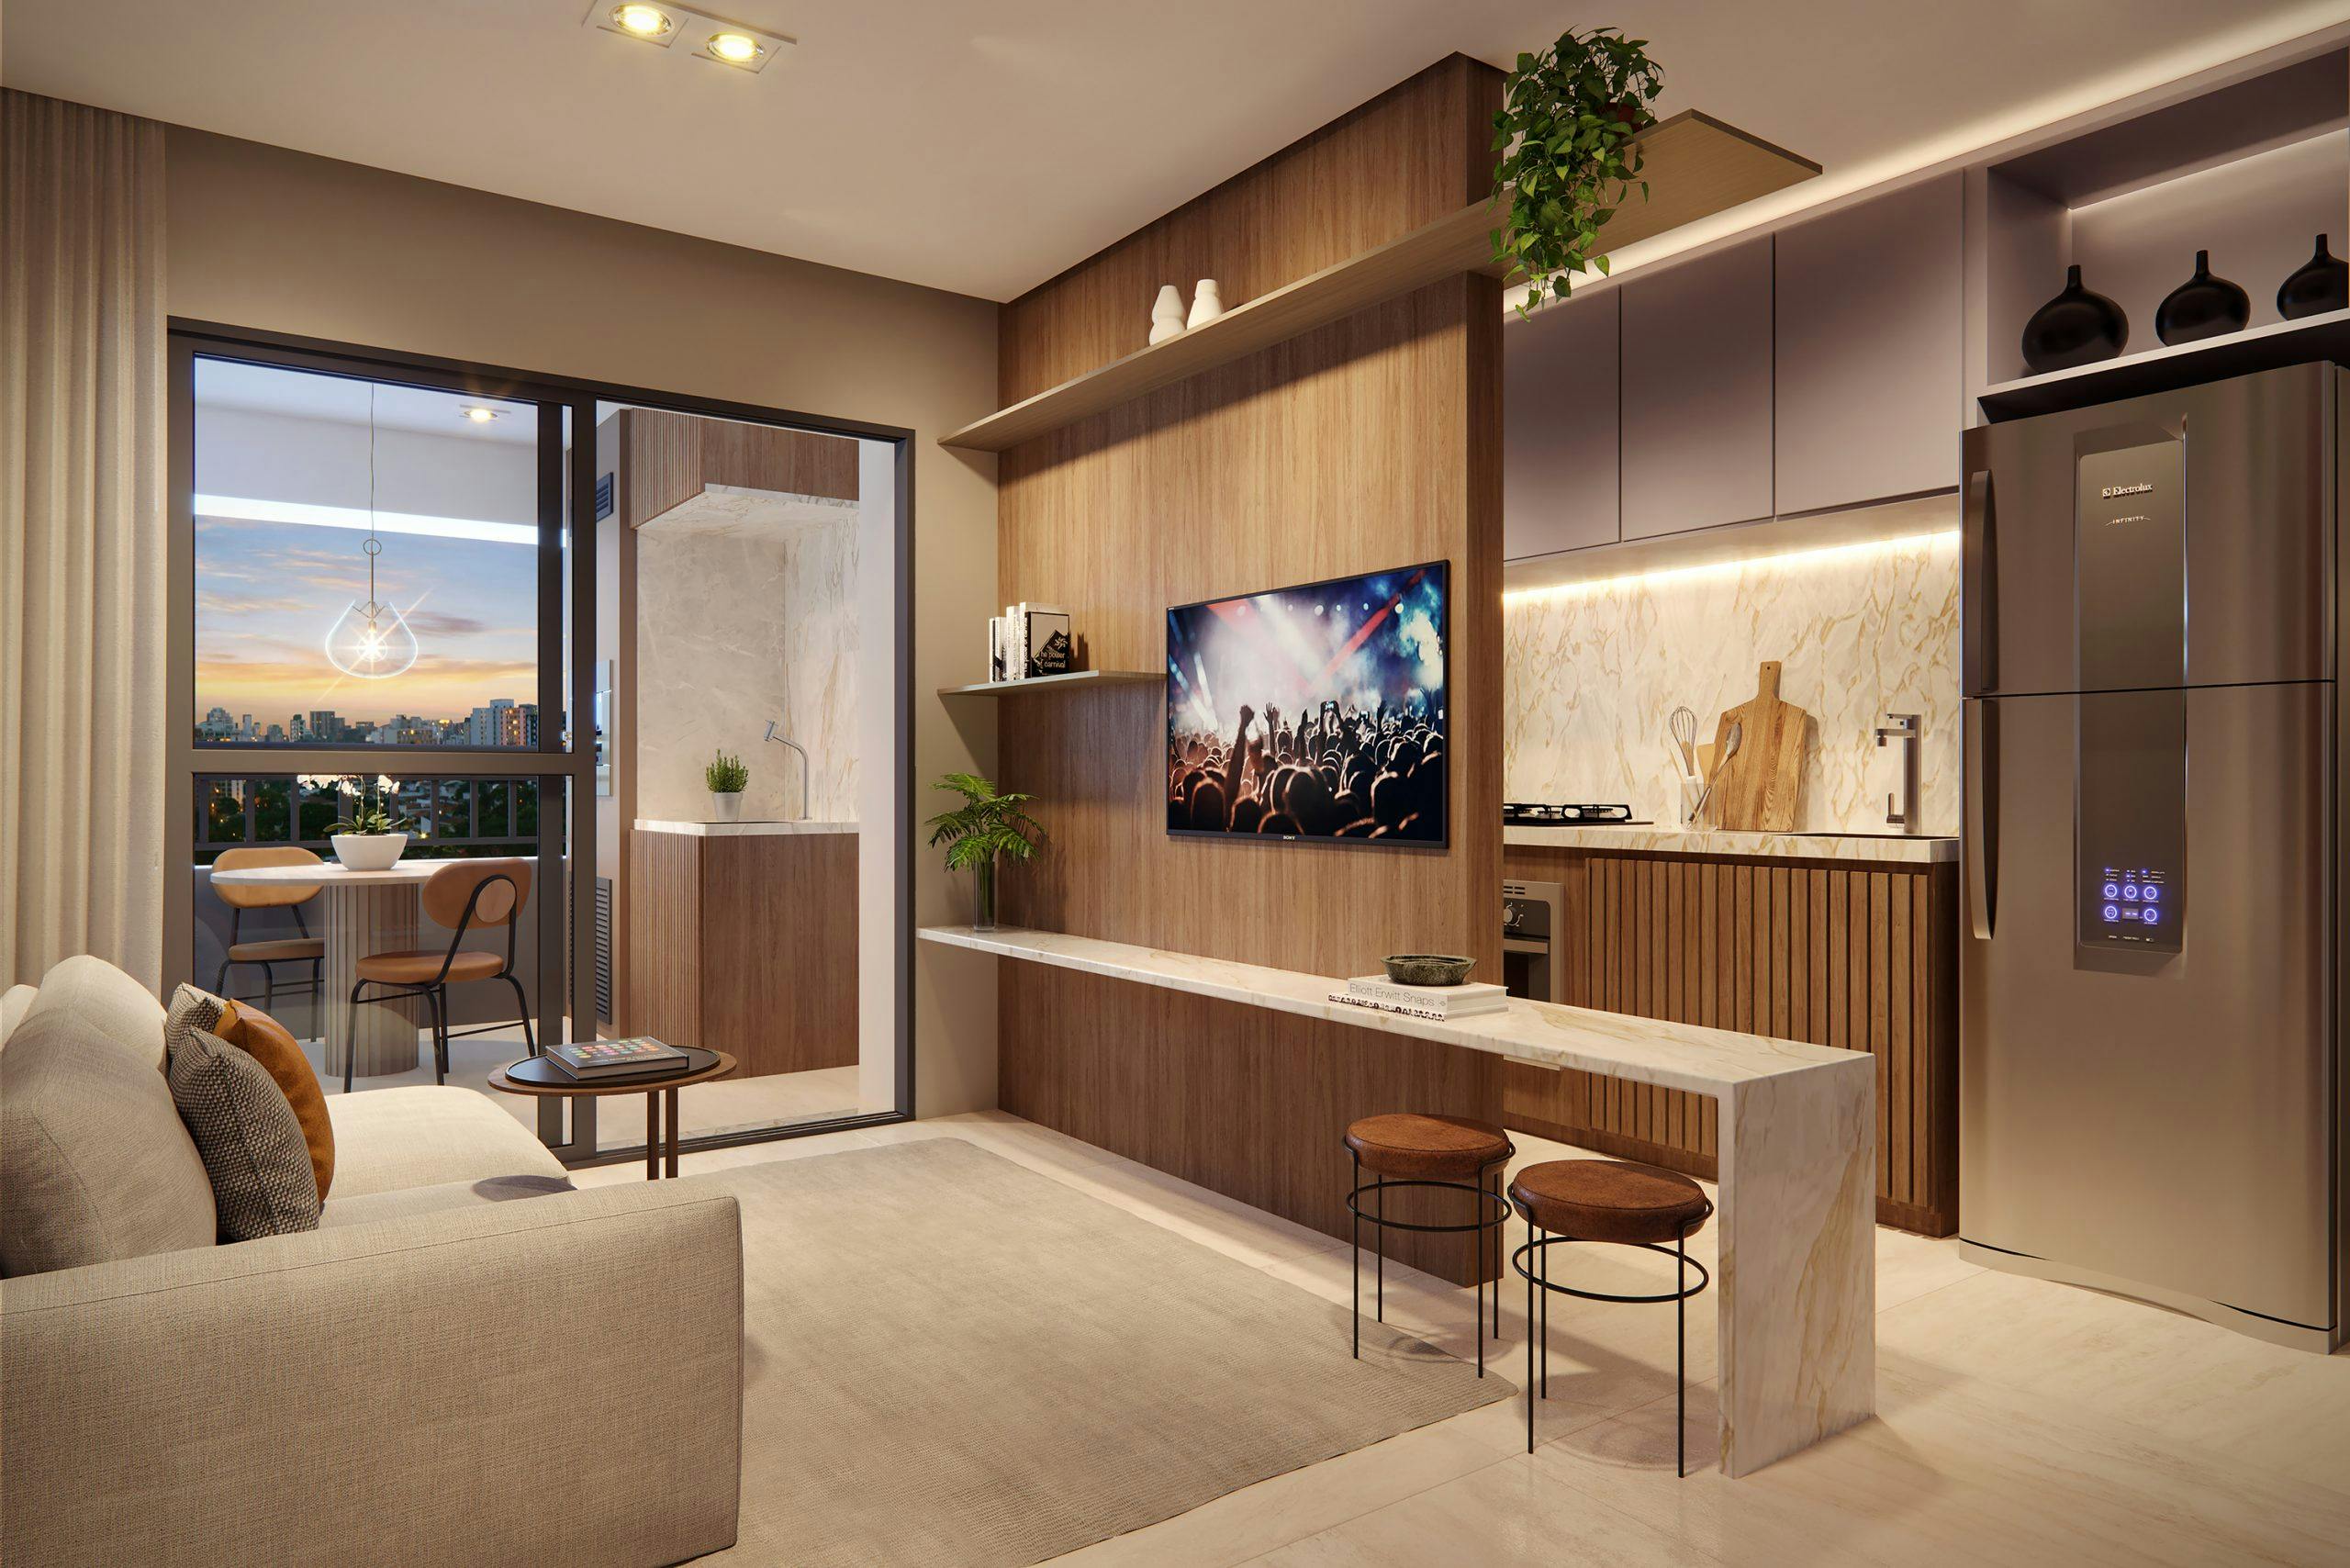 Imagem 3D do Apartamento com 2 dormitórios Torre Araucária